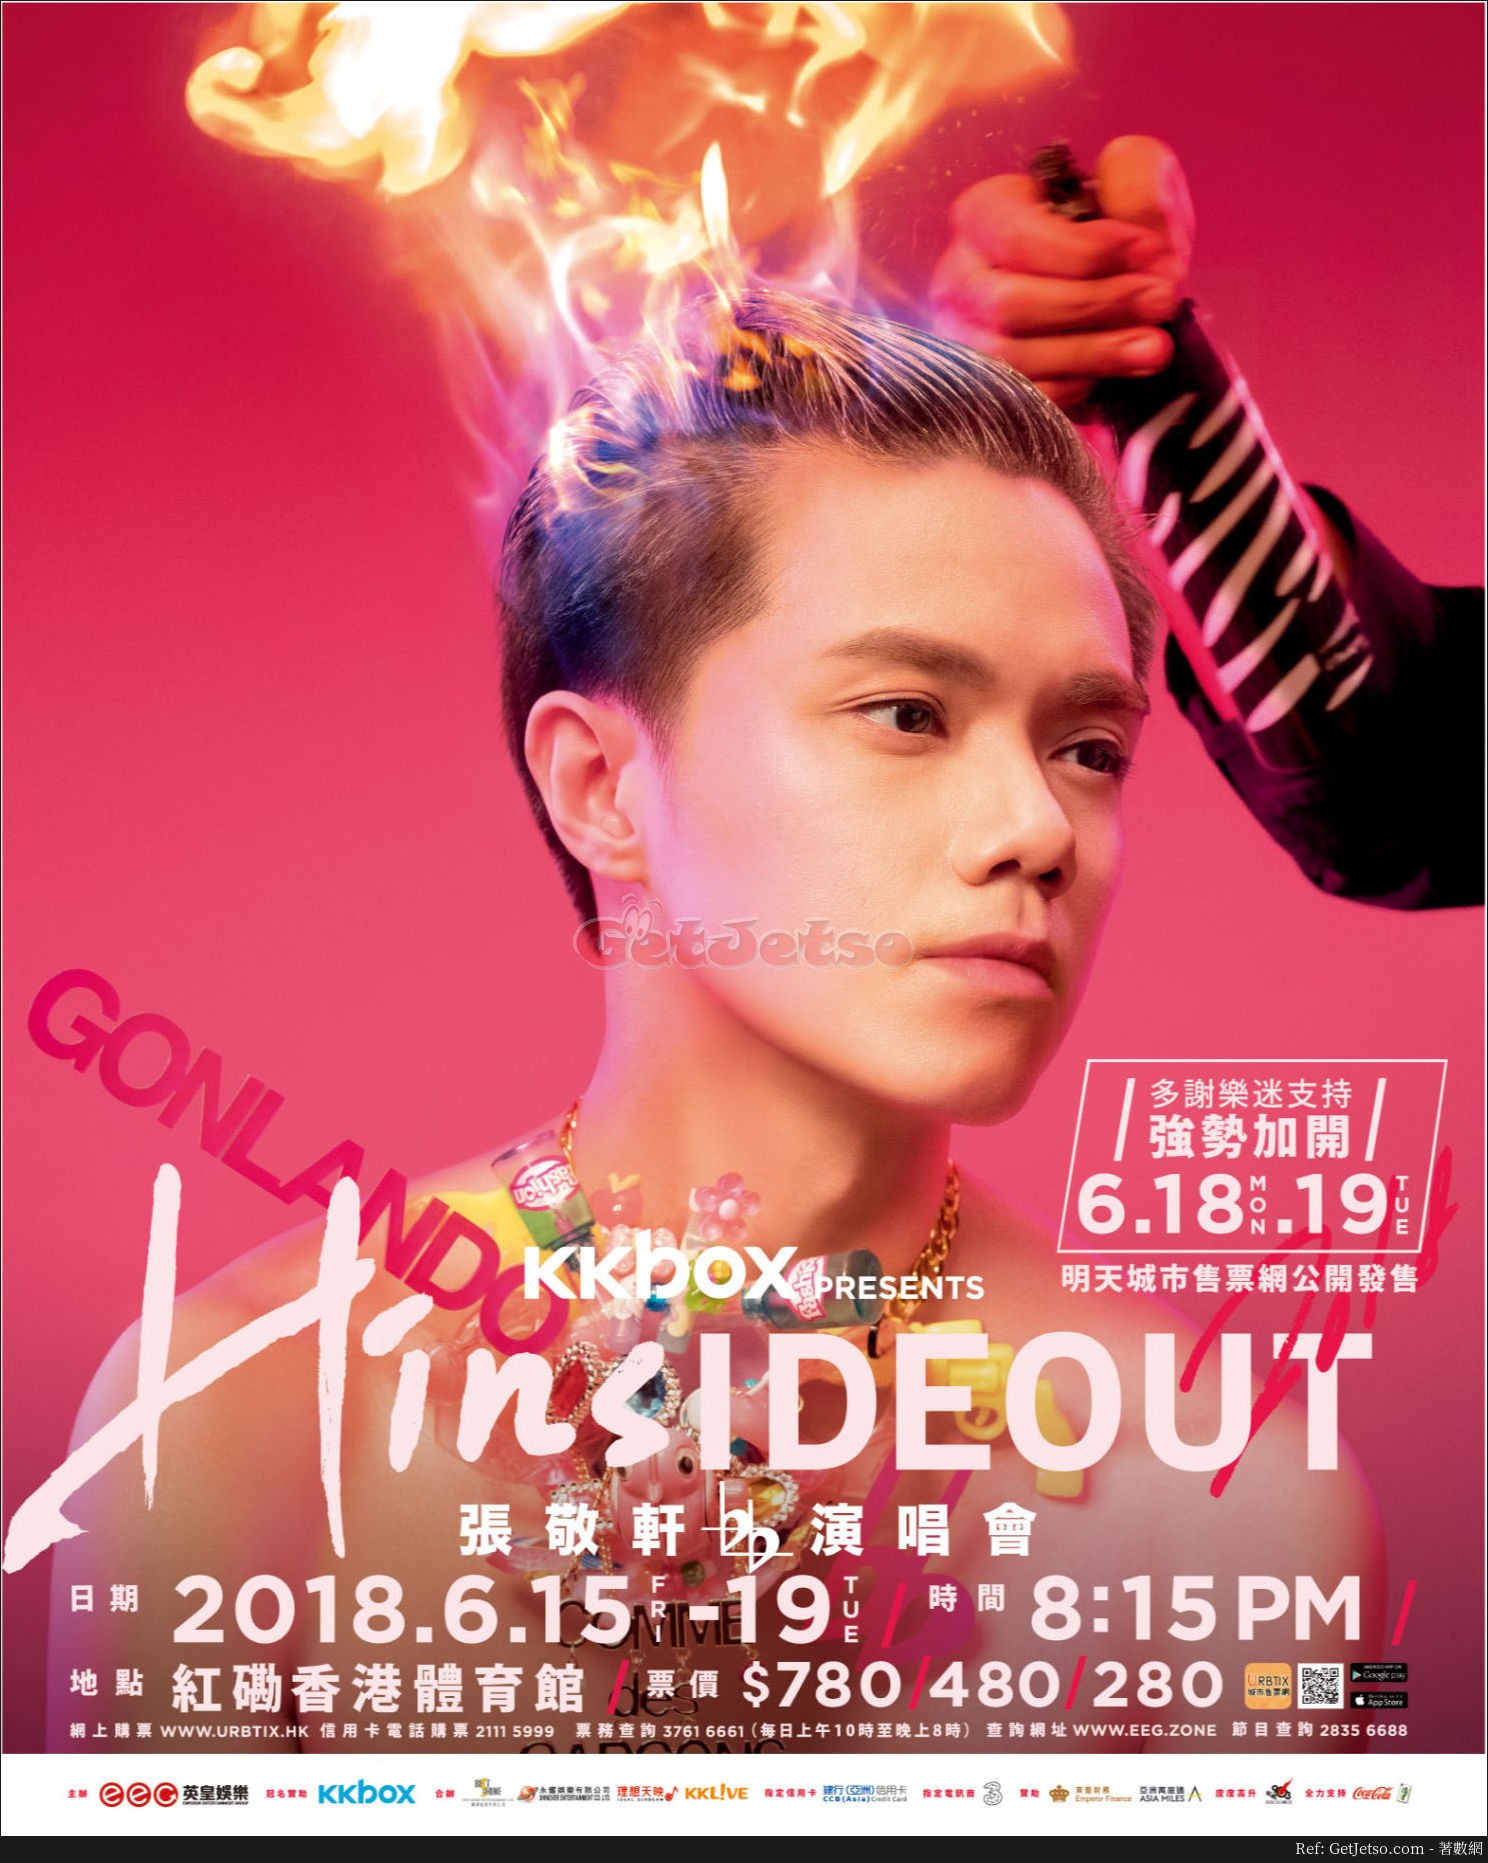 張敬軒演唱會HINSIDEOUT 加場門票公開發售(18年5月3日起)圖片3